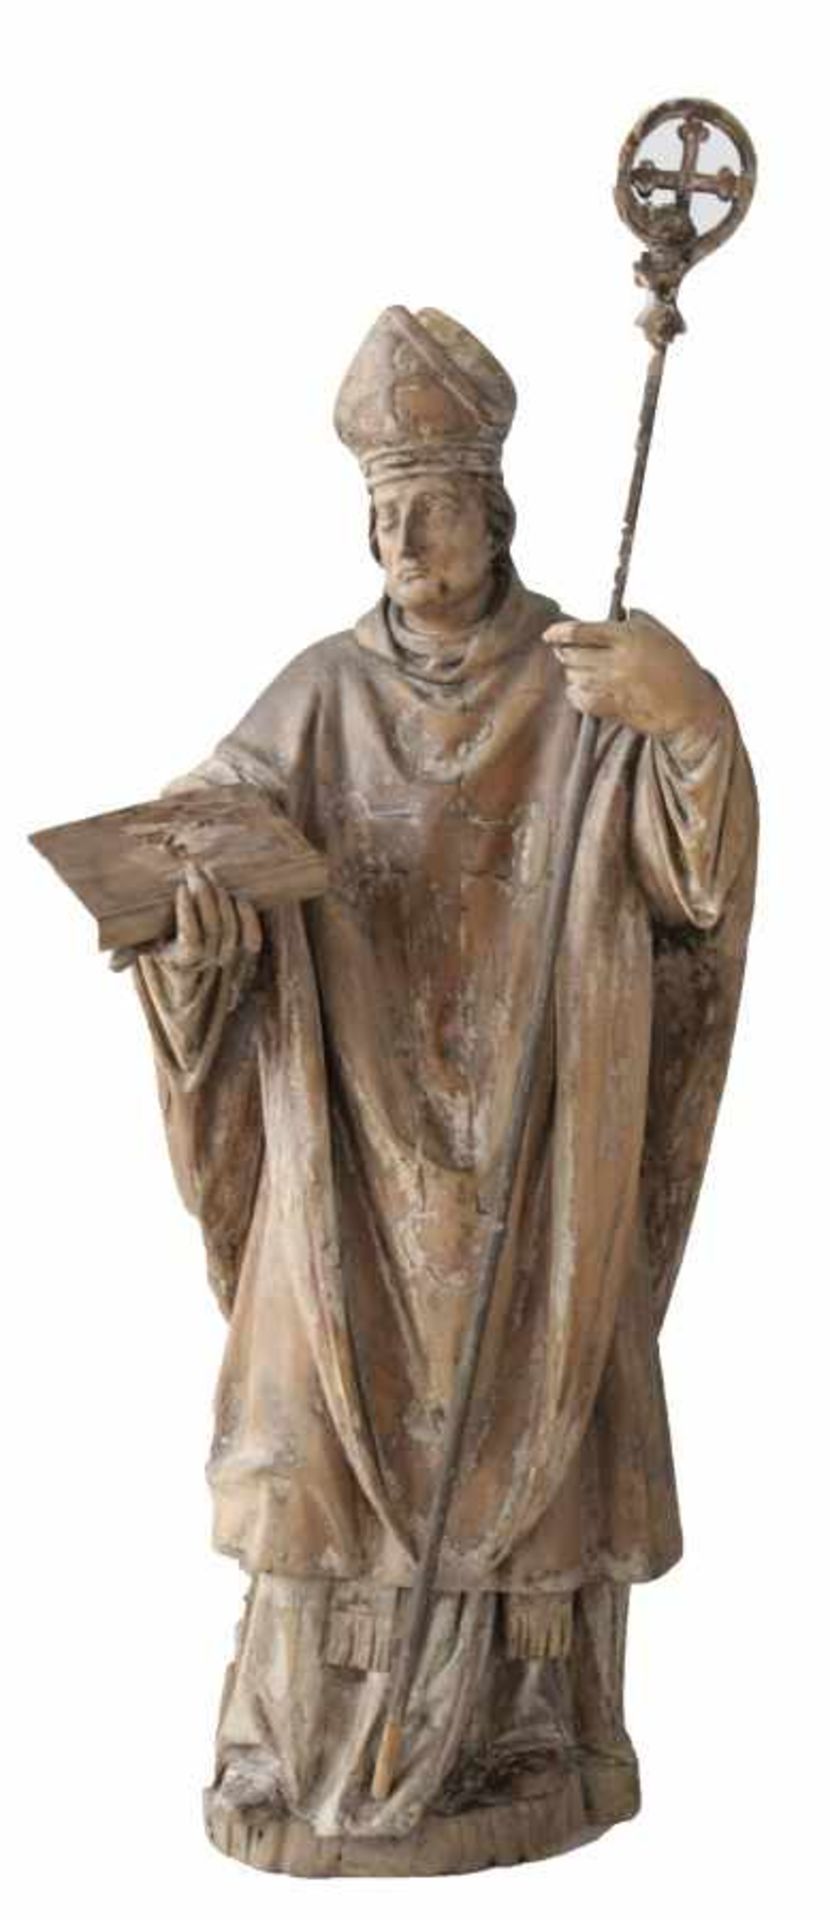 Barocke Skulptur - wohl deutsch 17.Jahrhundert "Missionsbischof - St. Bonifatius? mit Buch und